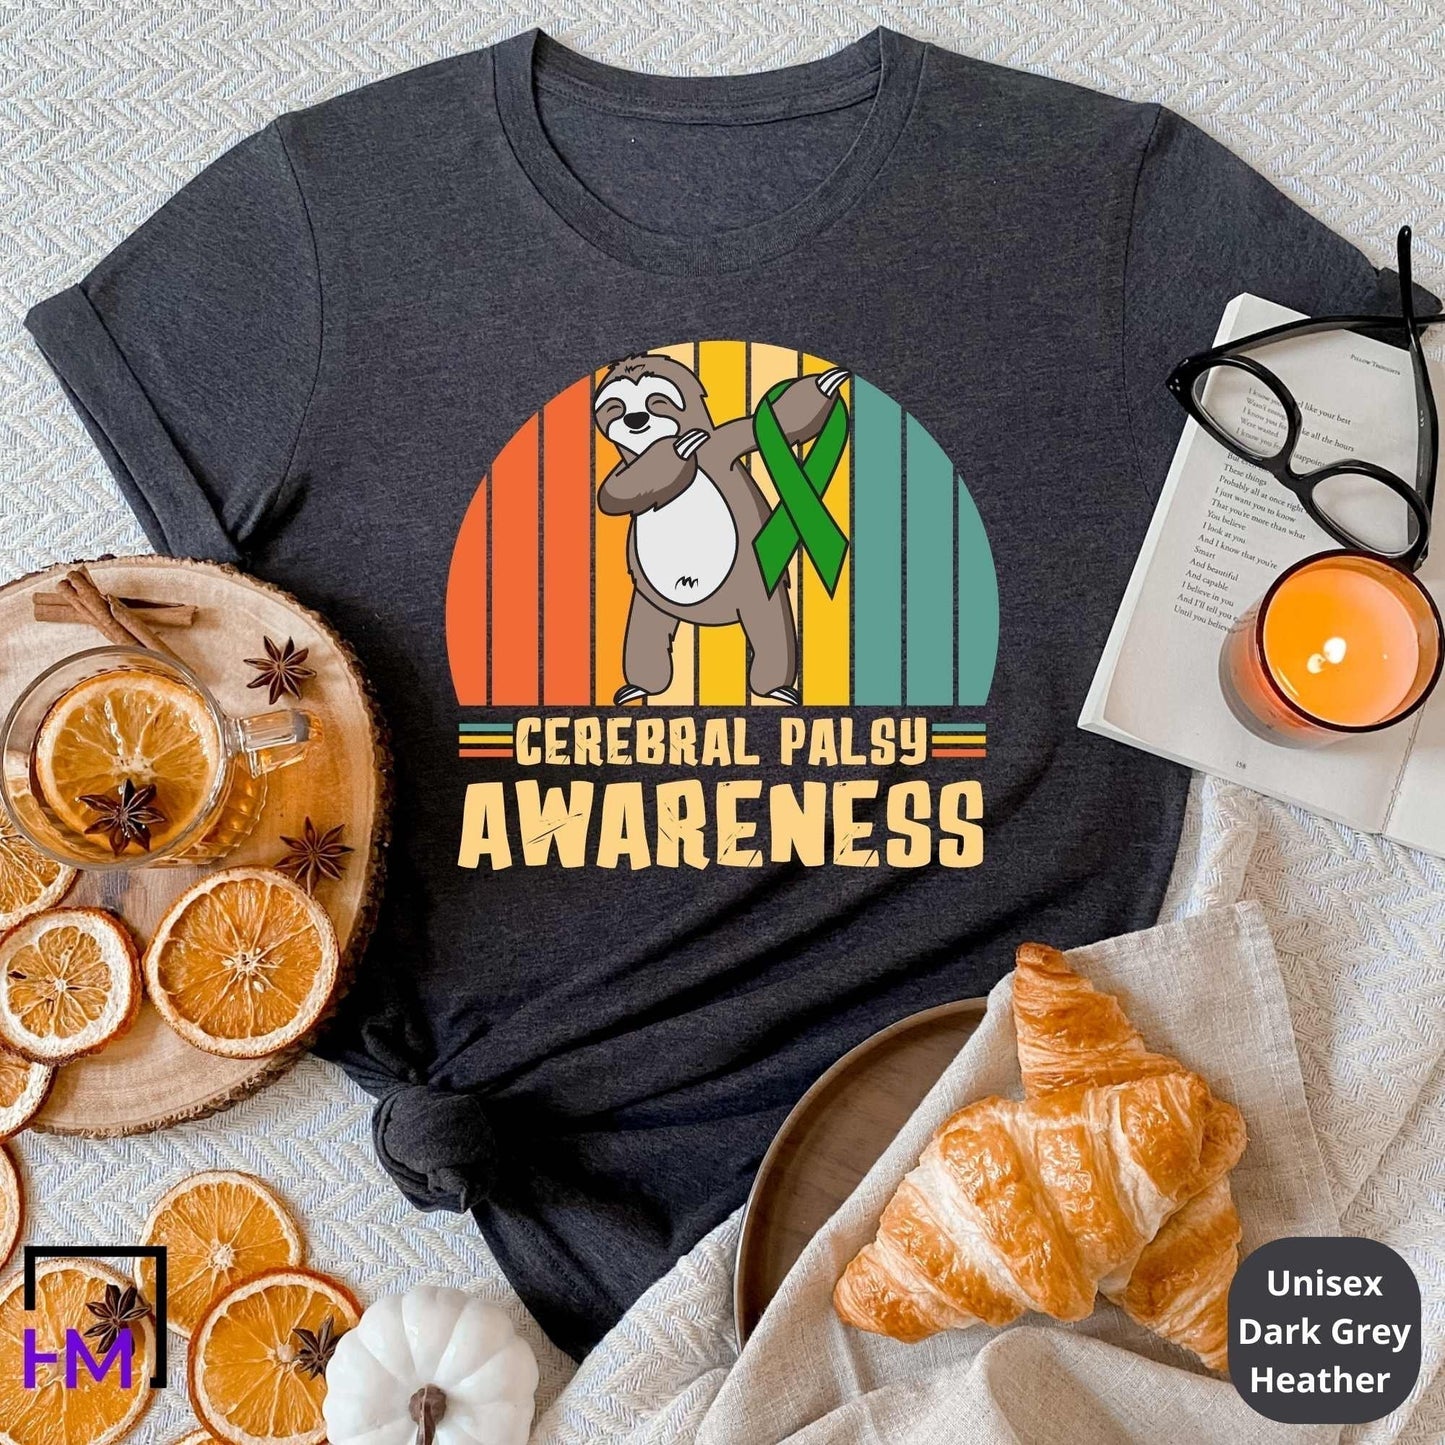 Cerebral Palsy Awareness Shirt, Warrior Gift, CP Awareness, Cerebral Palsy Gifts, Survivor Support Matching Group Tops, Tees & Sweatshirts